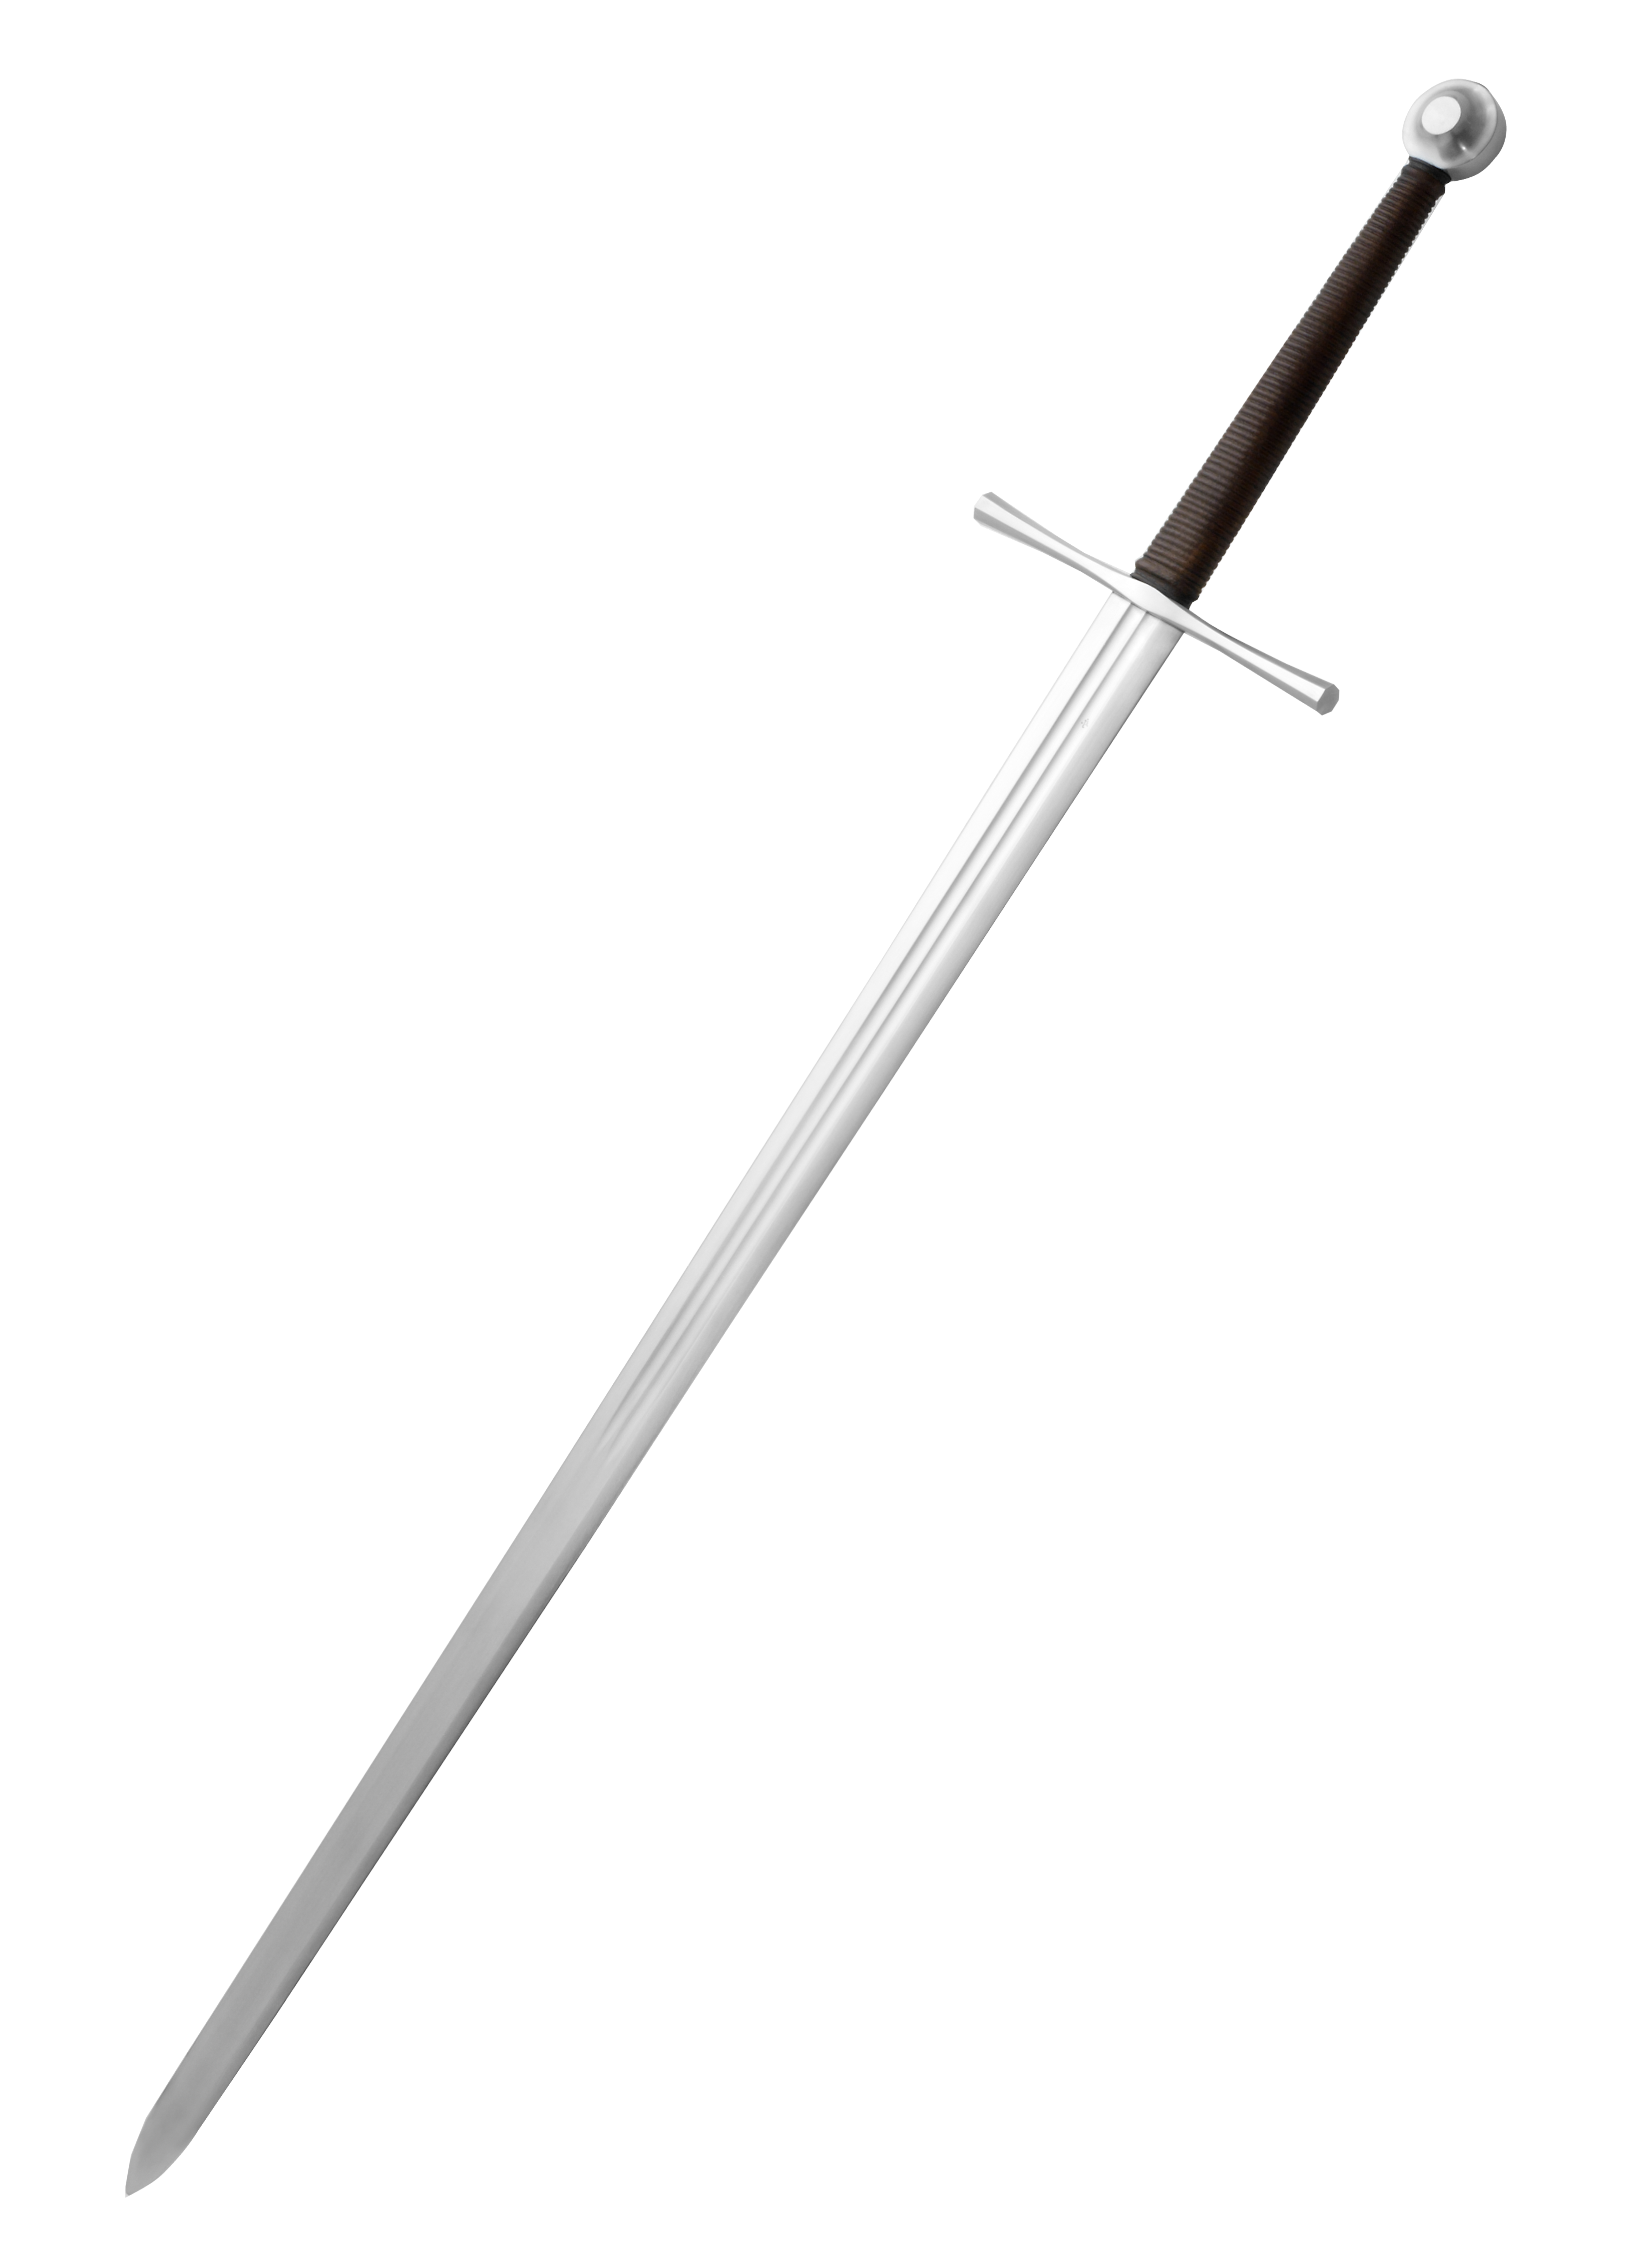 ¿Qué es una espada de mano y media?